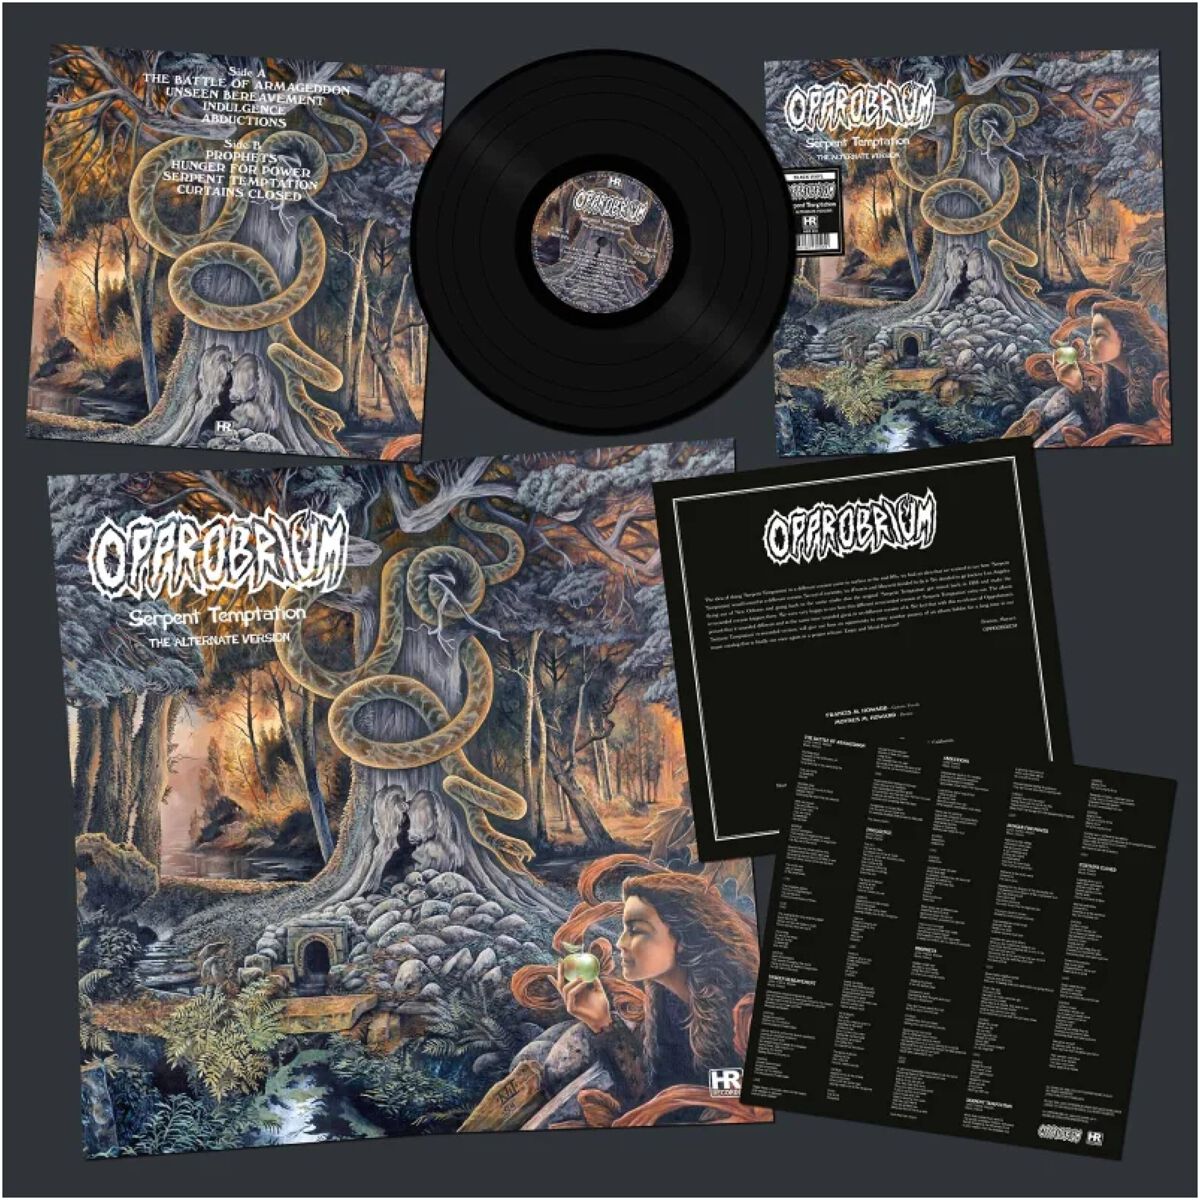 Serpent temptation - The Alternate Version 1996 von Opprobrium - LP (Limited Edition, Re-Release, Standard)